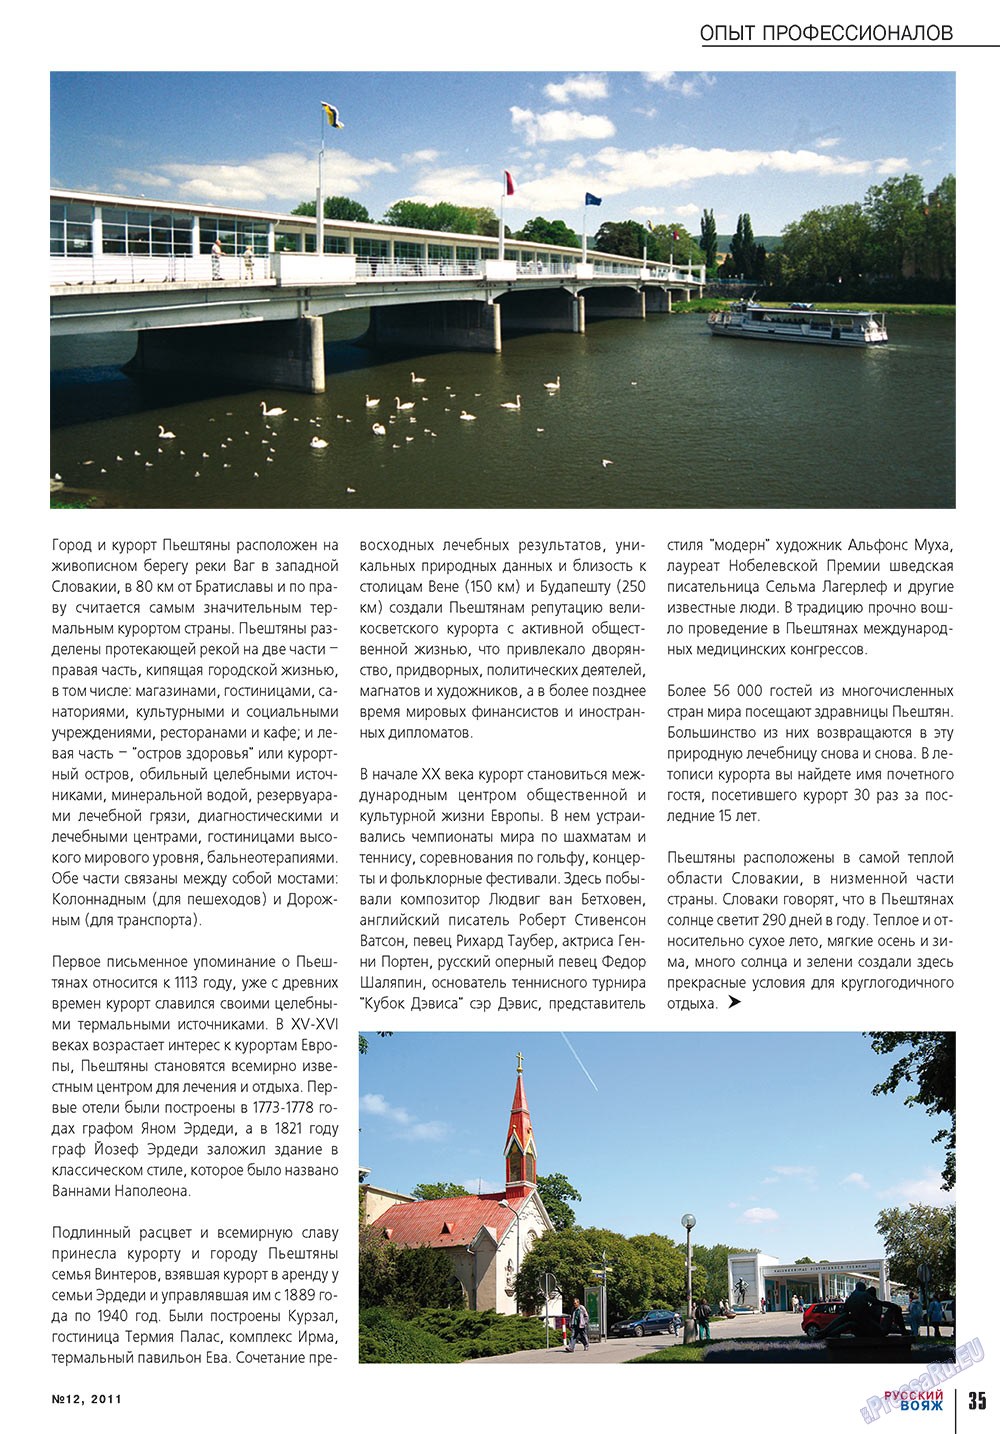 Русский вояж, журнал. 2011 №12 стр.35